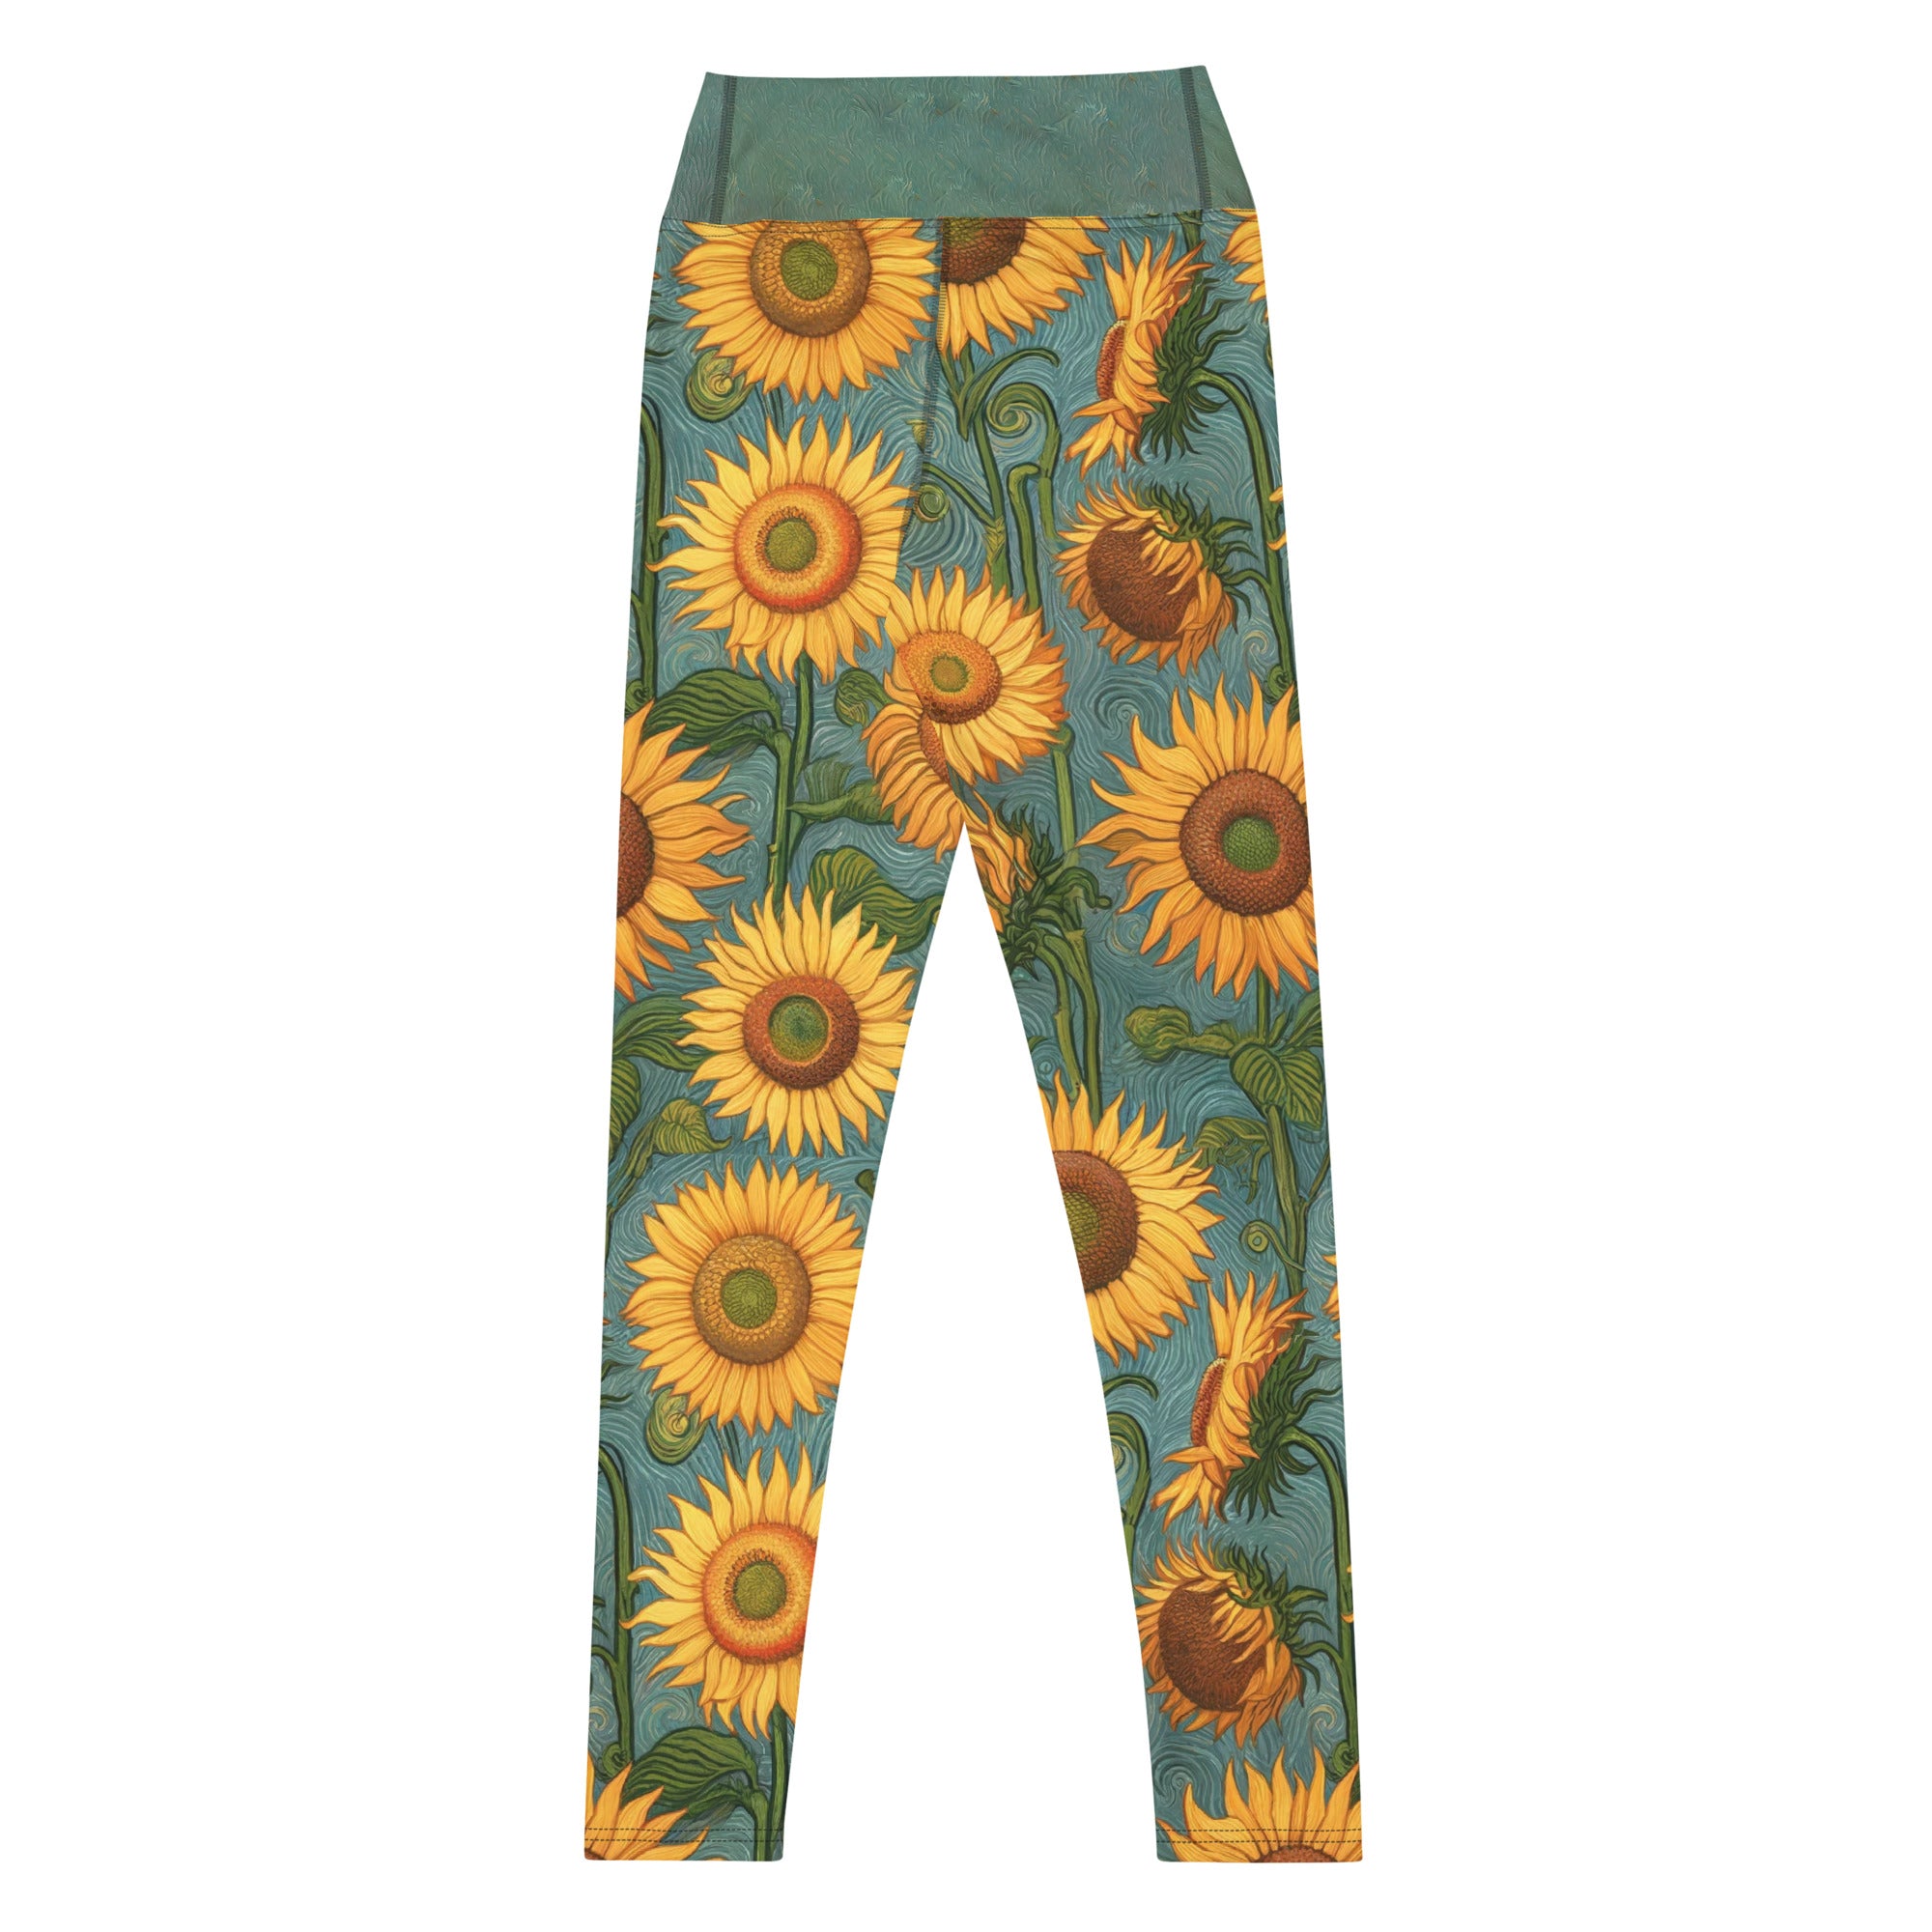 Vincent van Gogh 'Sunflowers' Famous Painting Yoga Leggings | Premium Art Yoga Leggings